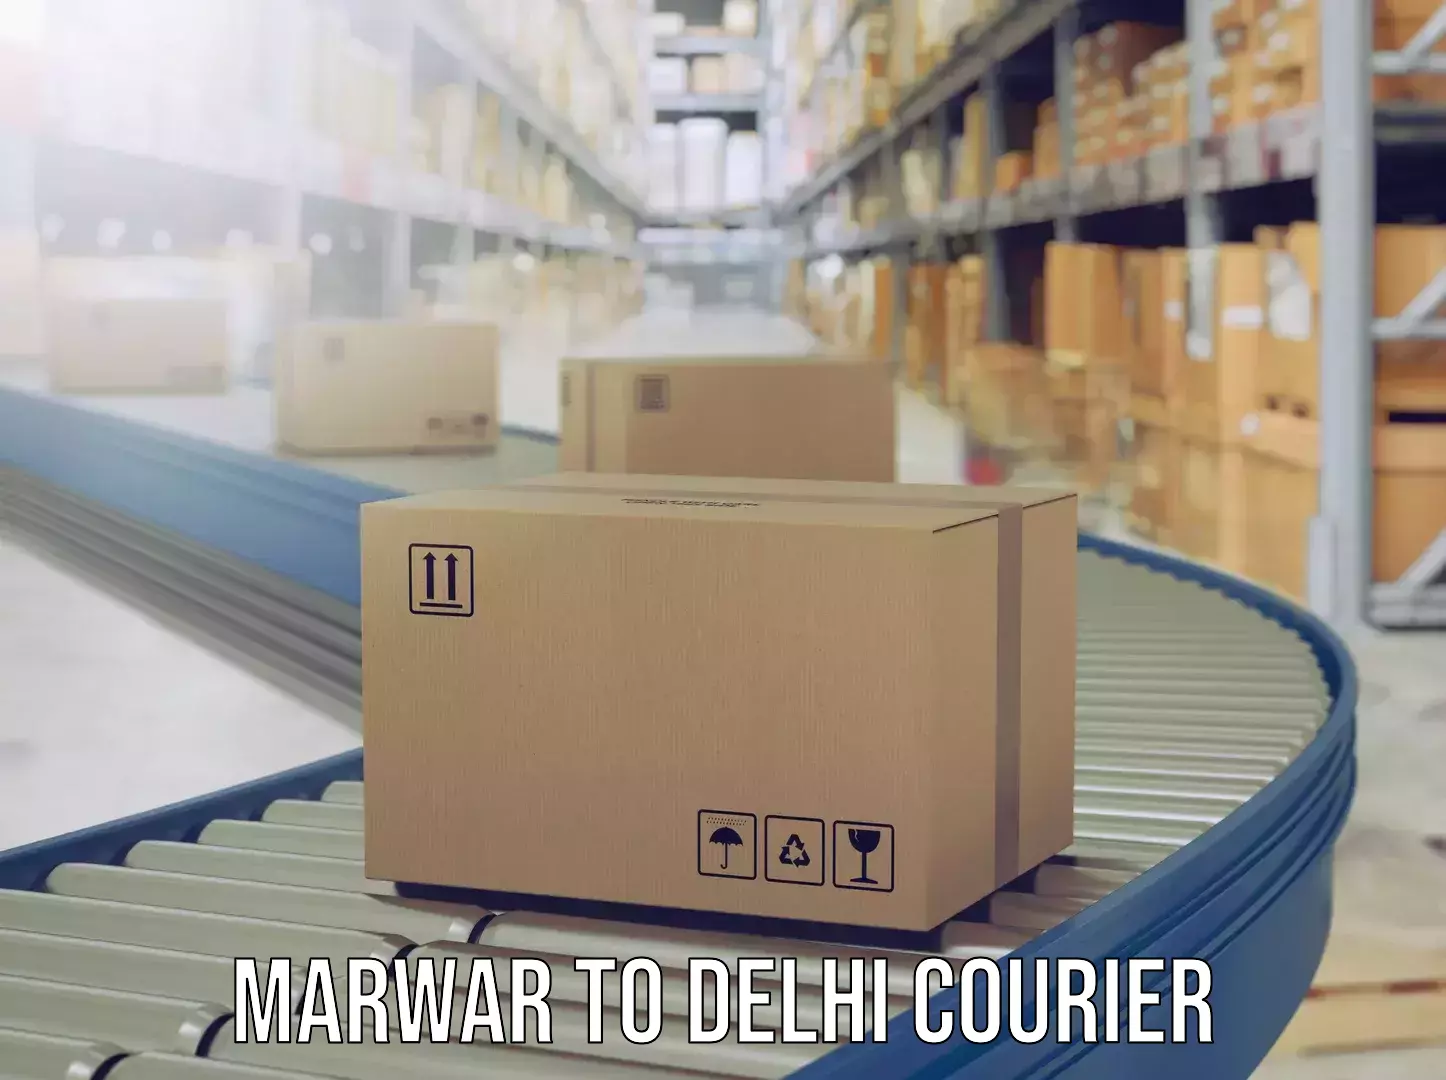 Luggage delivery app Marwar to Delhi